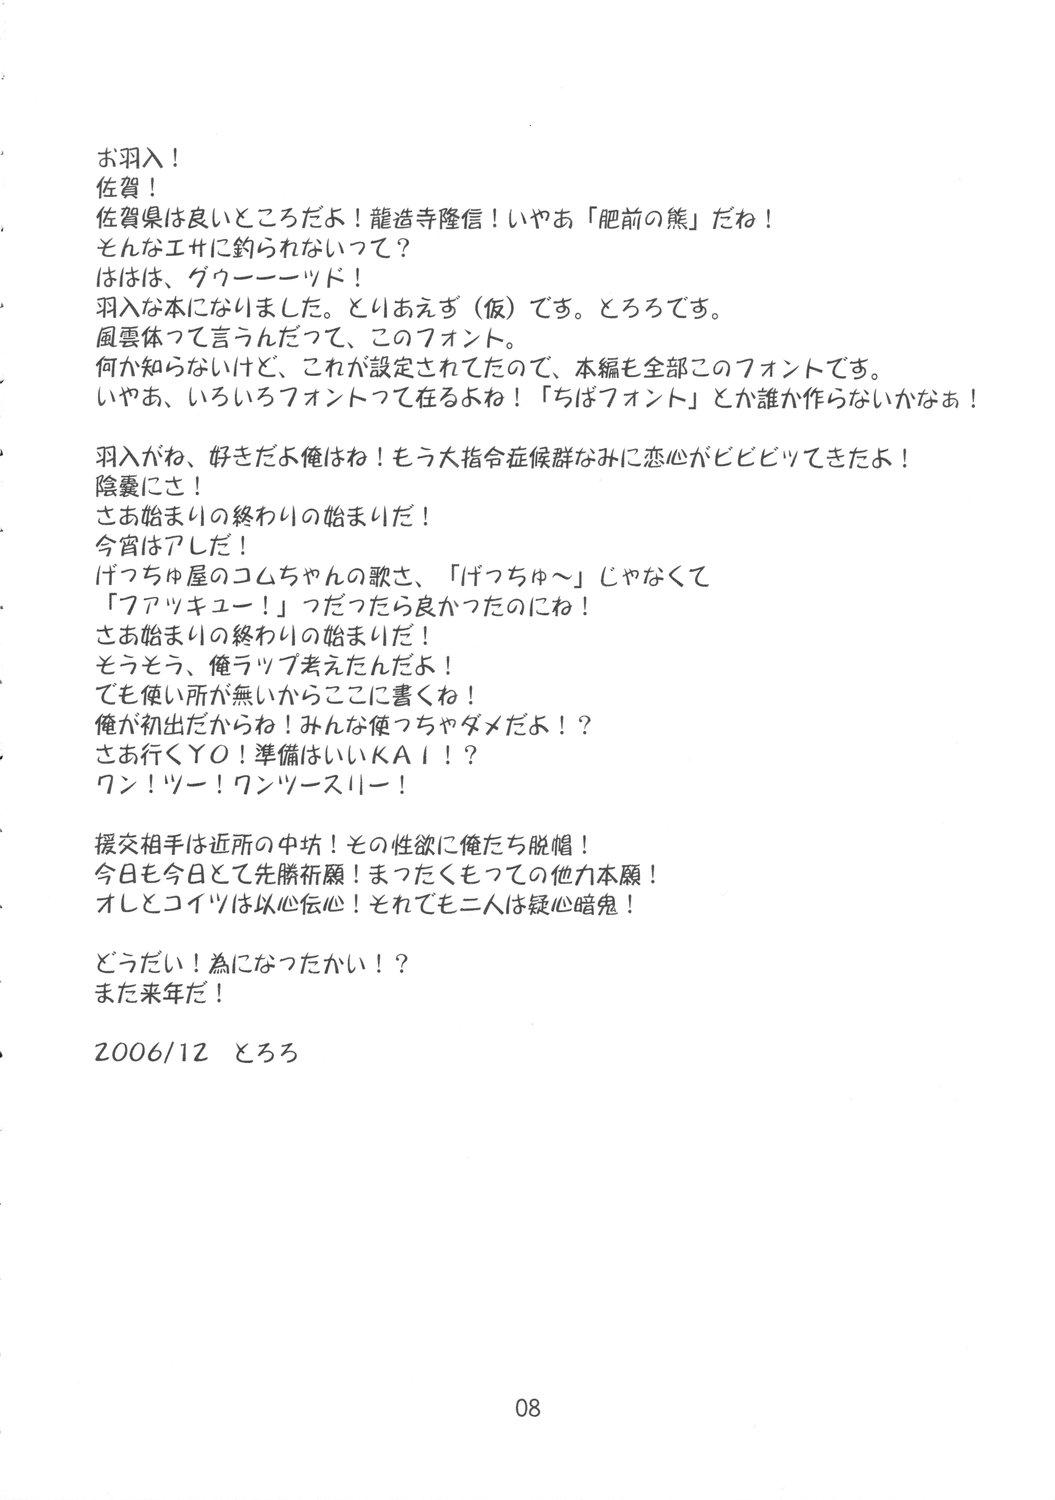 Peludo Yume no Kakera - Higurashi no naku koro ni Leite - Page 7